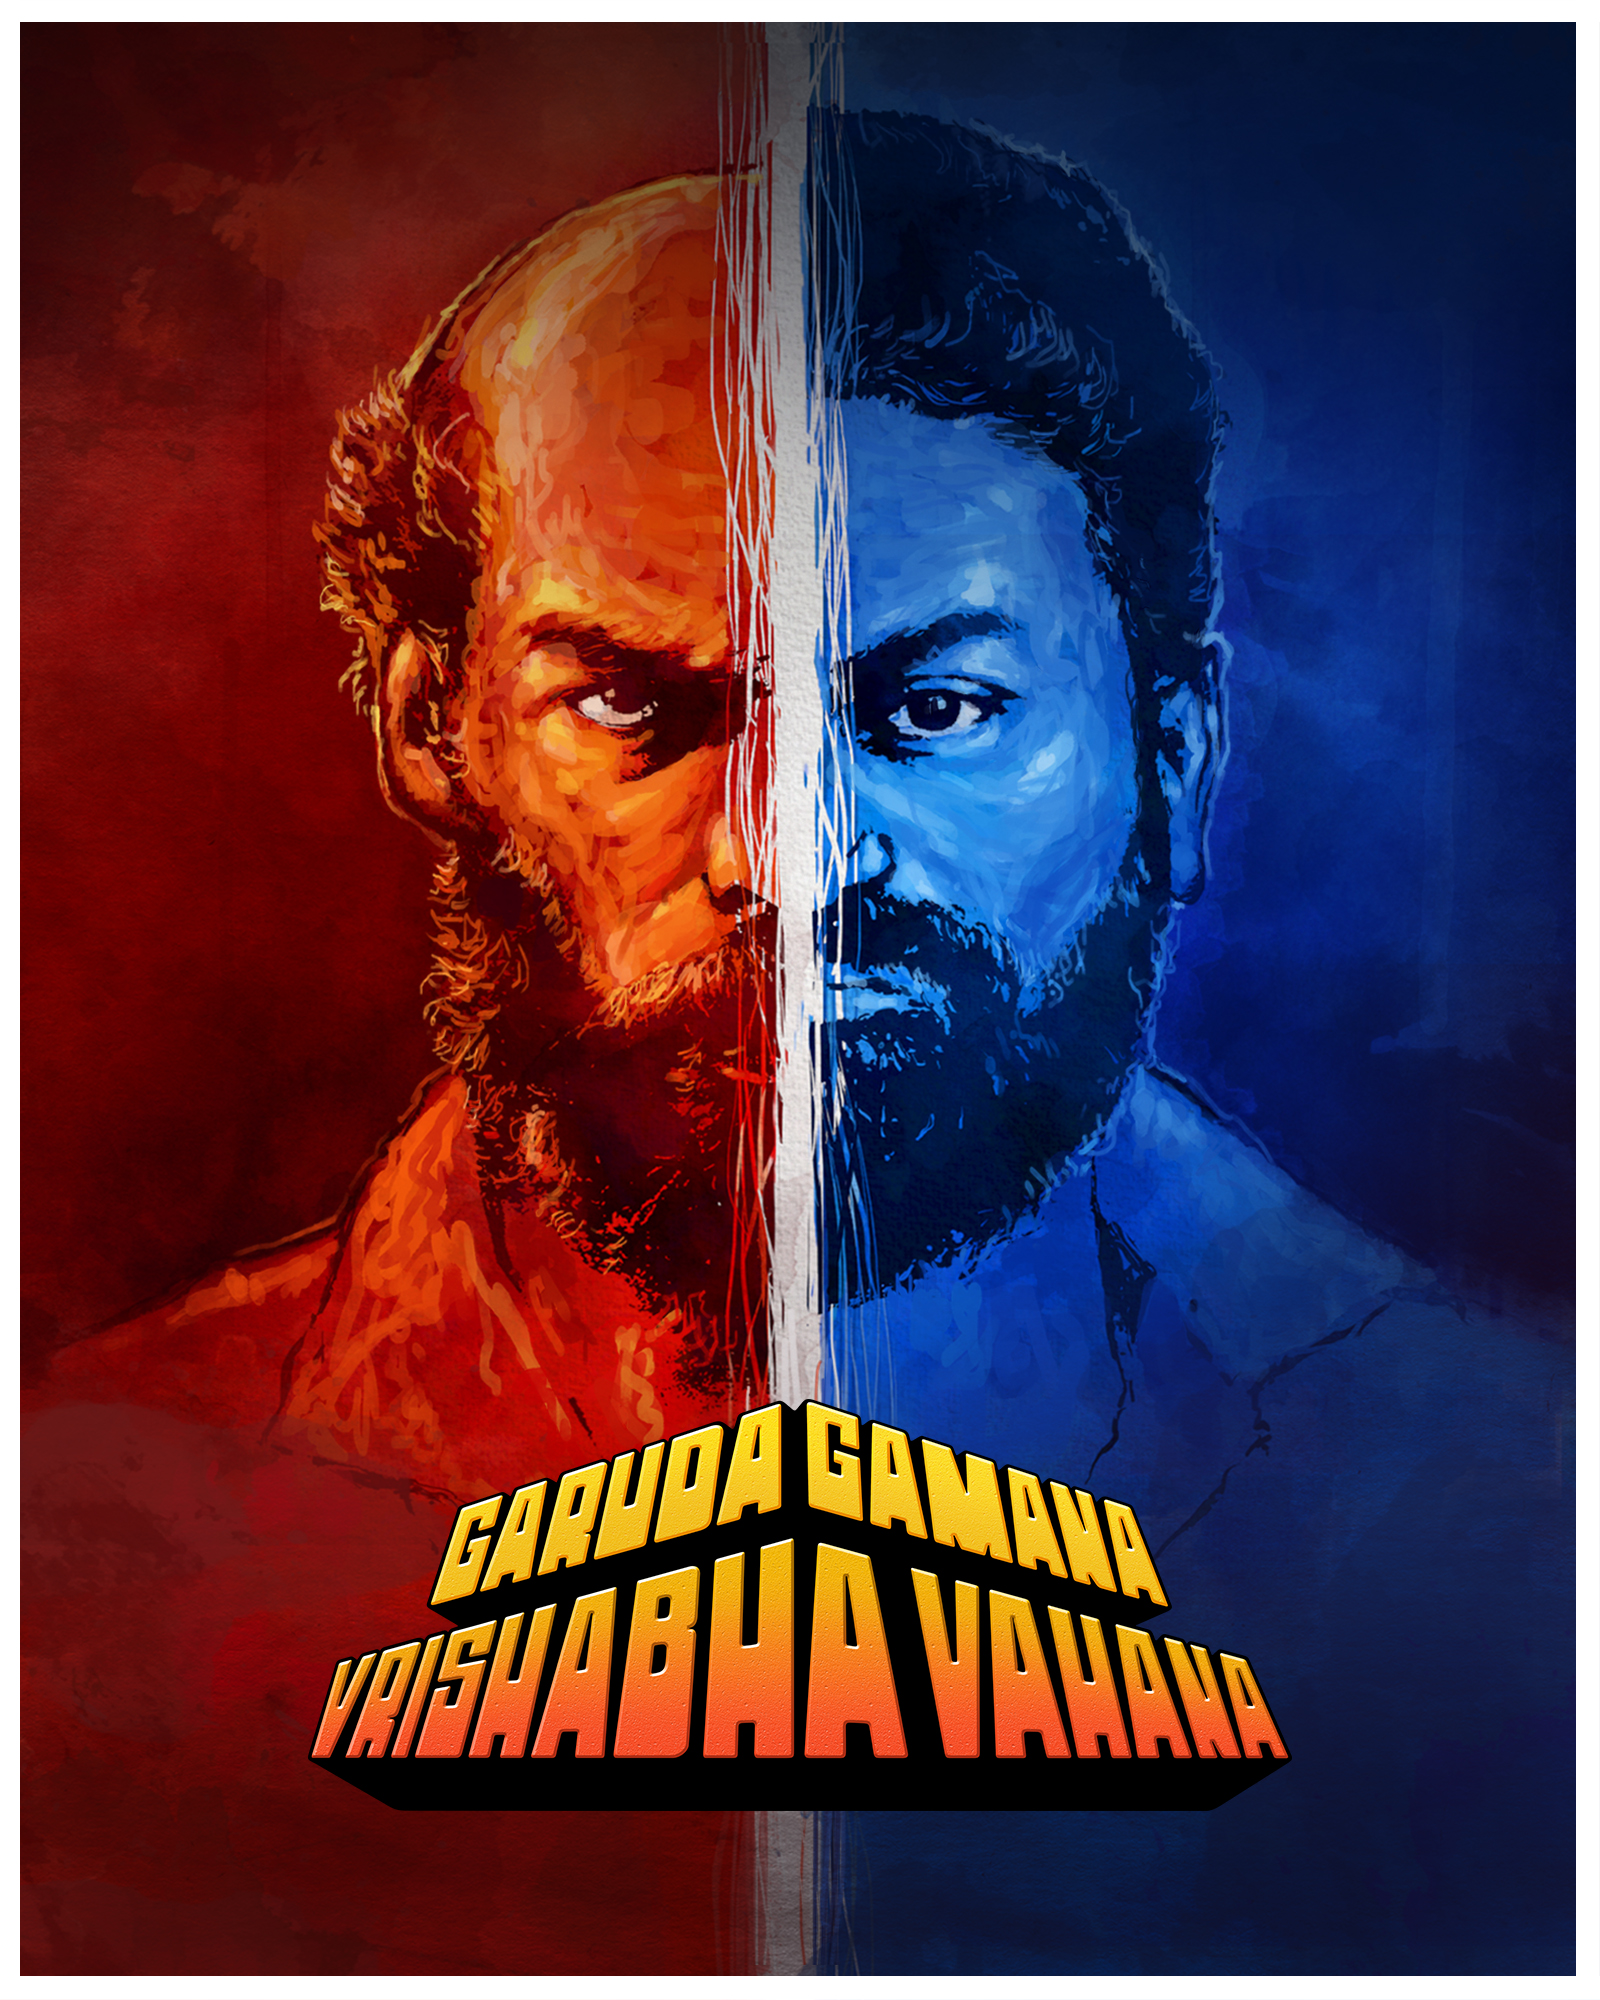 Garuda Gamana Vrishabha Vahana (2021) 1080p HDRip Full Kannada Movie ESubs [2.1GB]